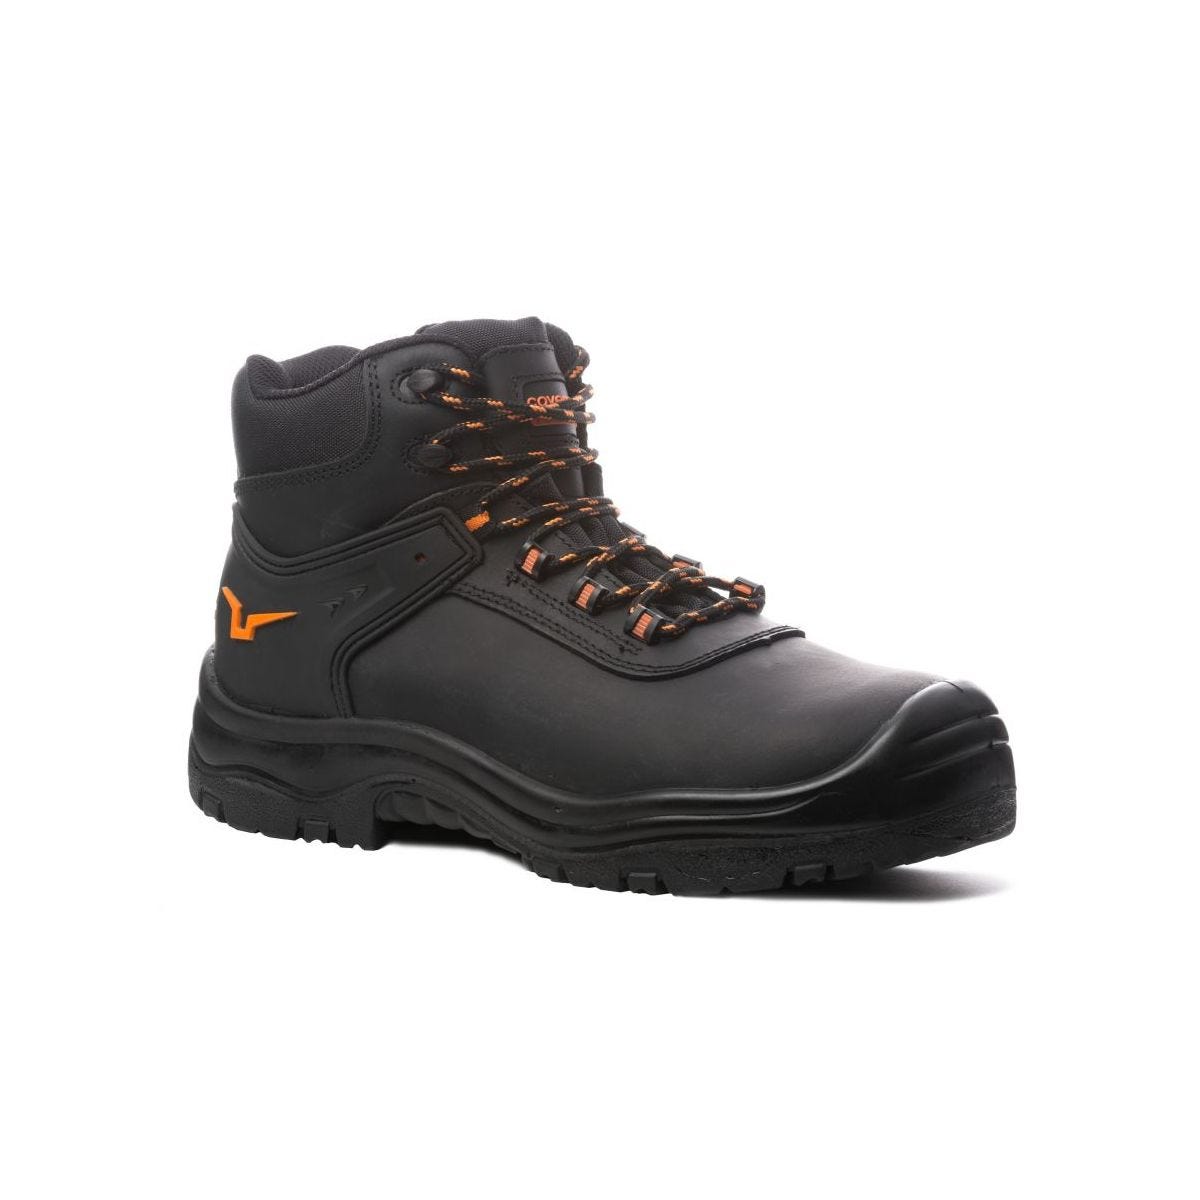 Chaussures de sécurité hautes S3 SRC OPAL composite Noir - Coverguard - Taille 38 0